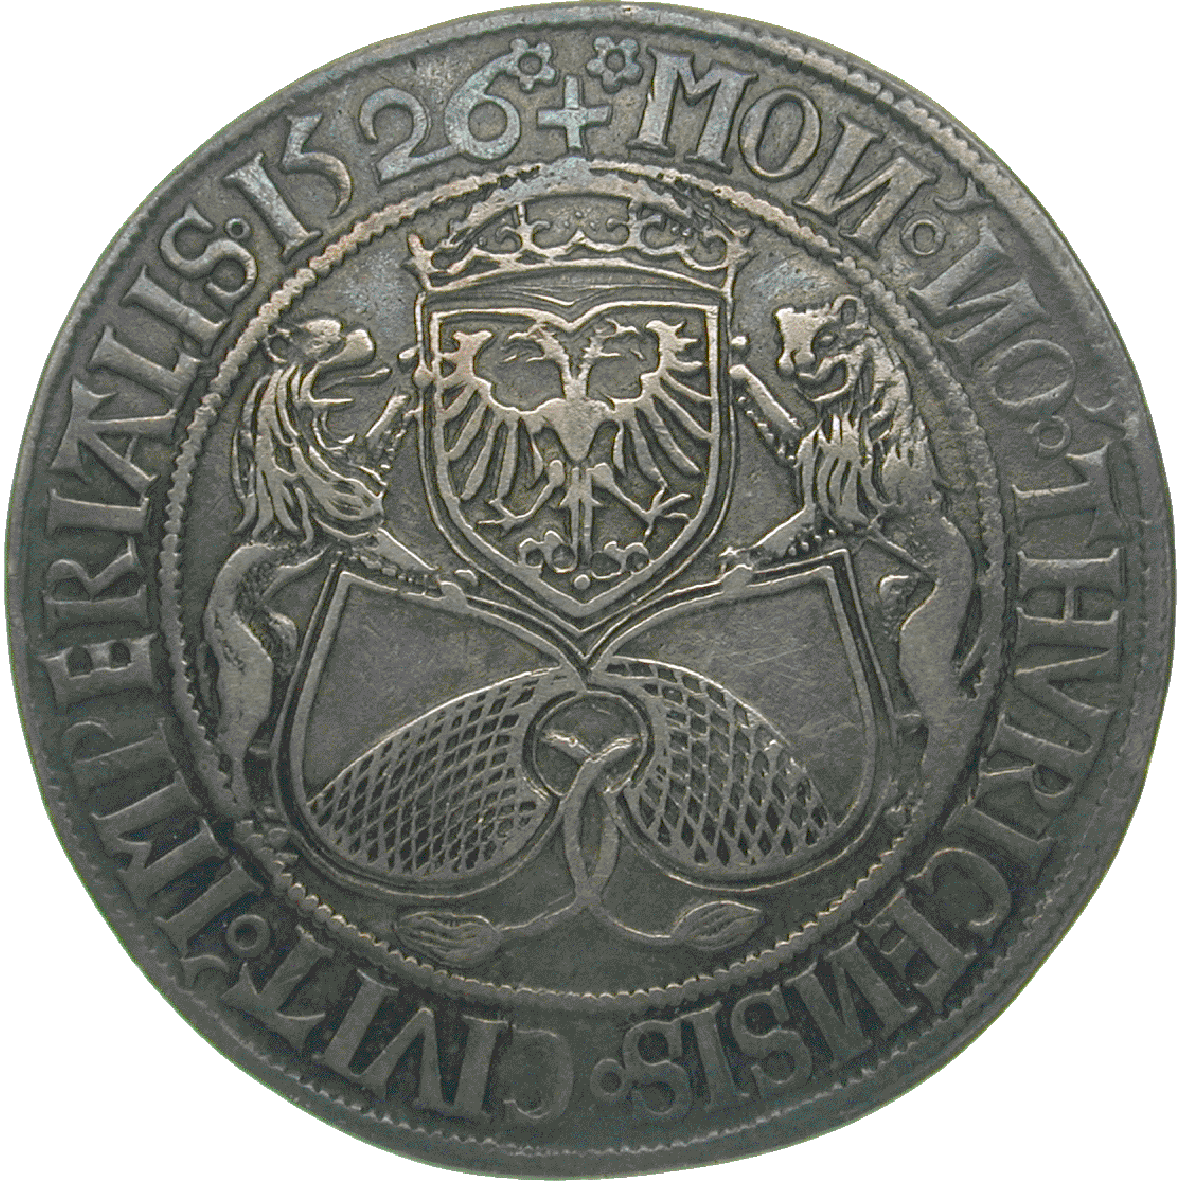 Holy Roman Empire, City of Zurich, Guldiner 1526 (obverse)